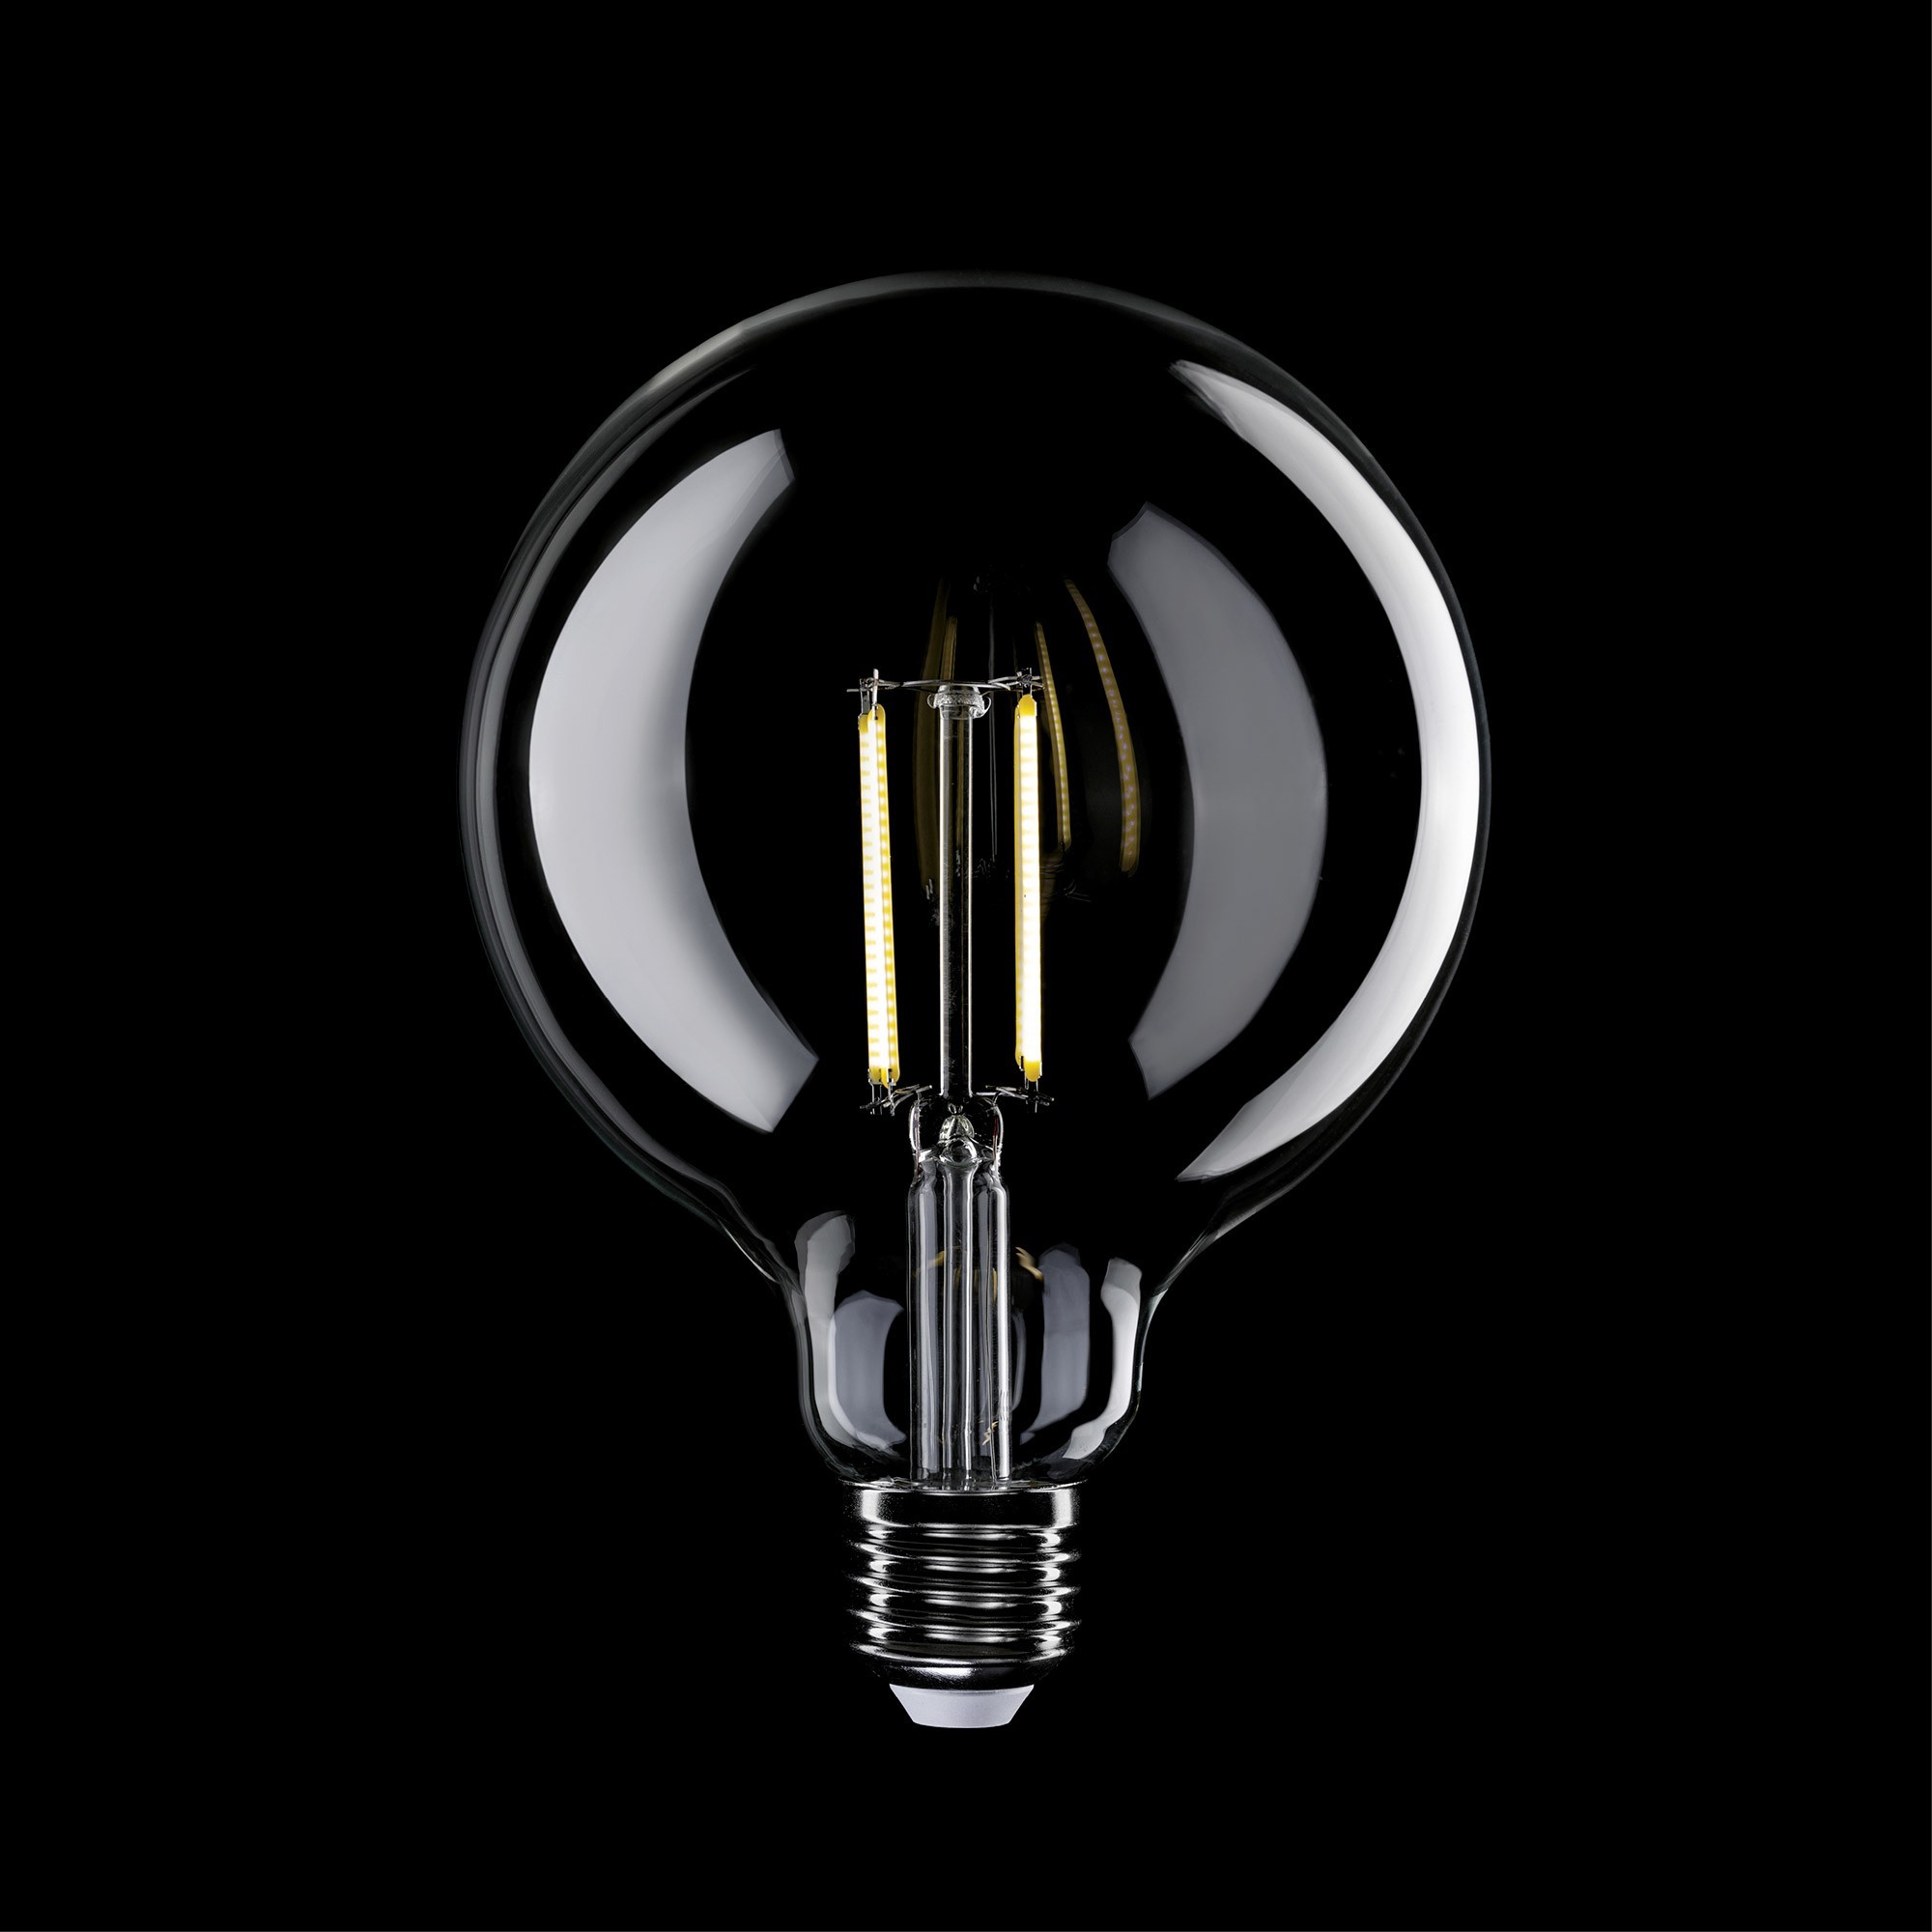 N04 - LED G125 Light Bulb, E27, 7W, 3500K, 806Lm, clear glass